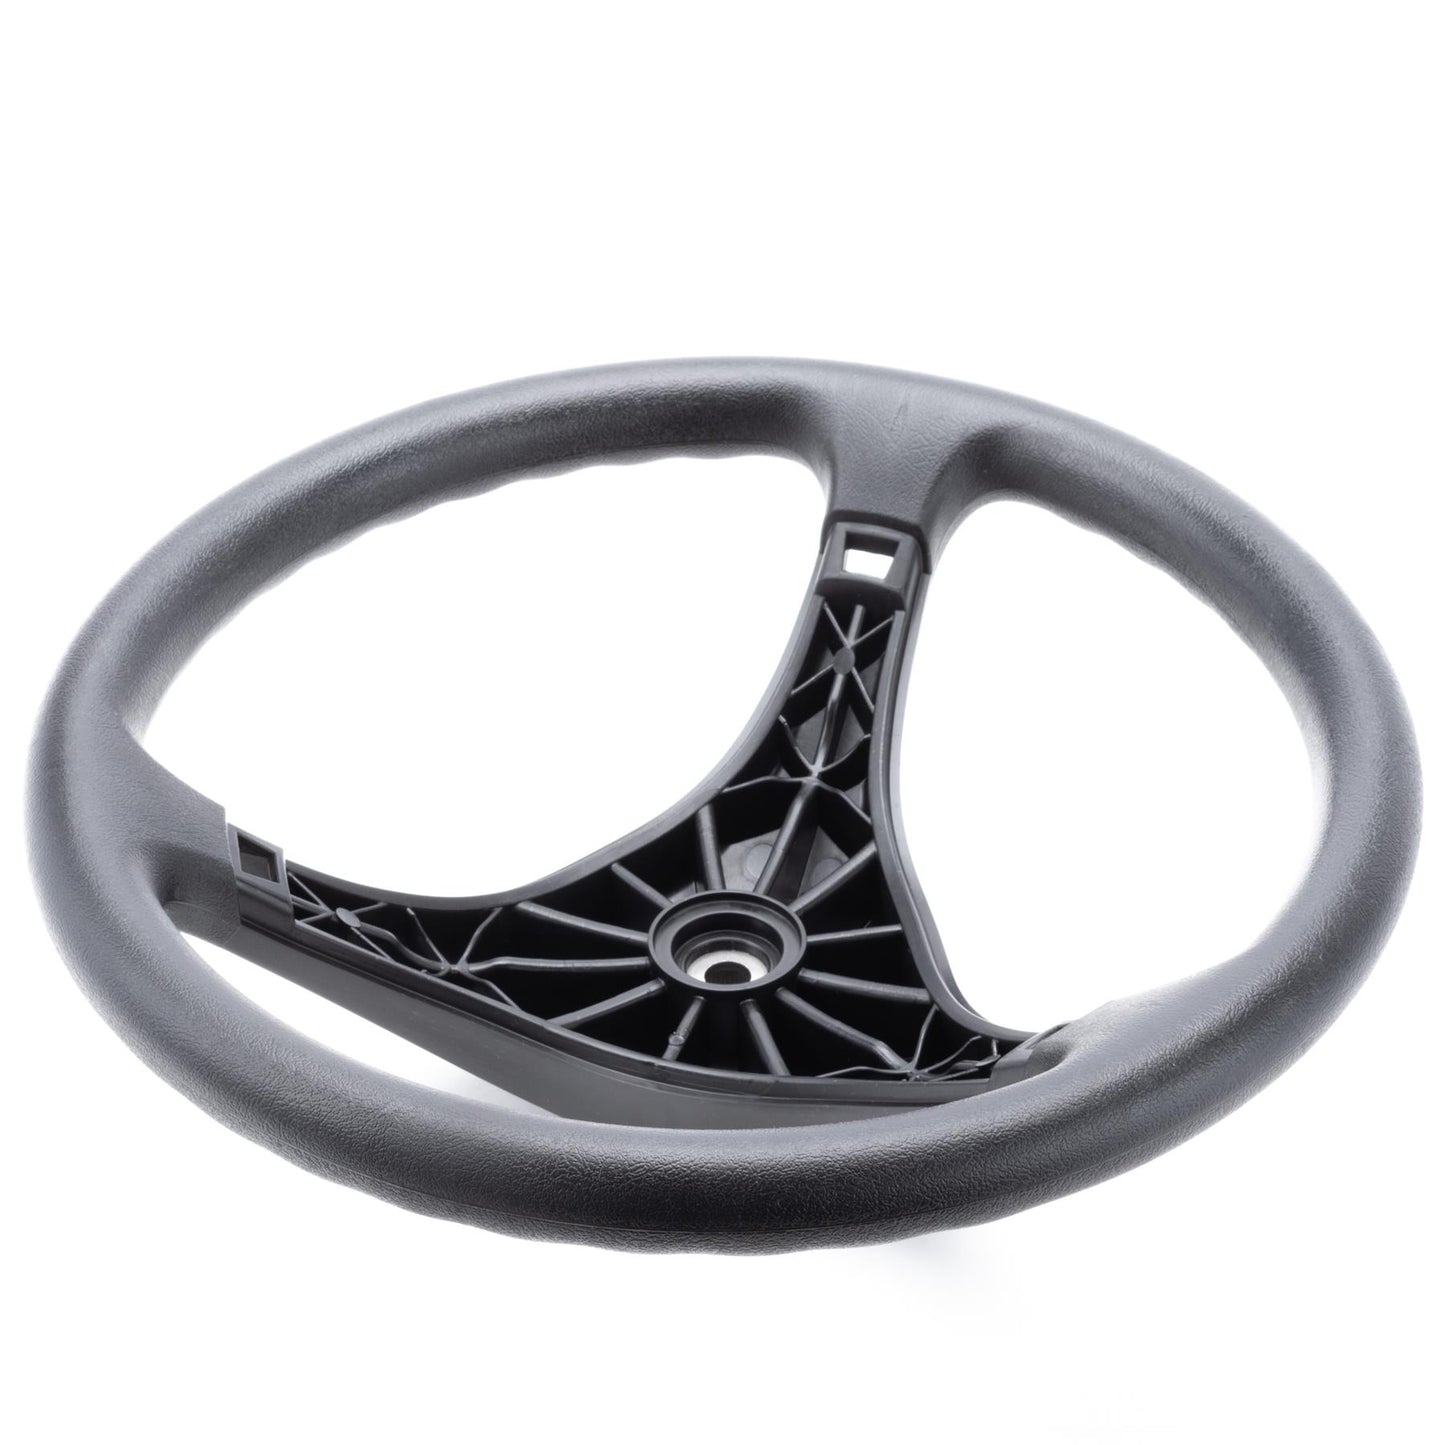 John Deere Steering Wheel - GY22529